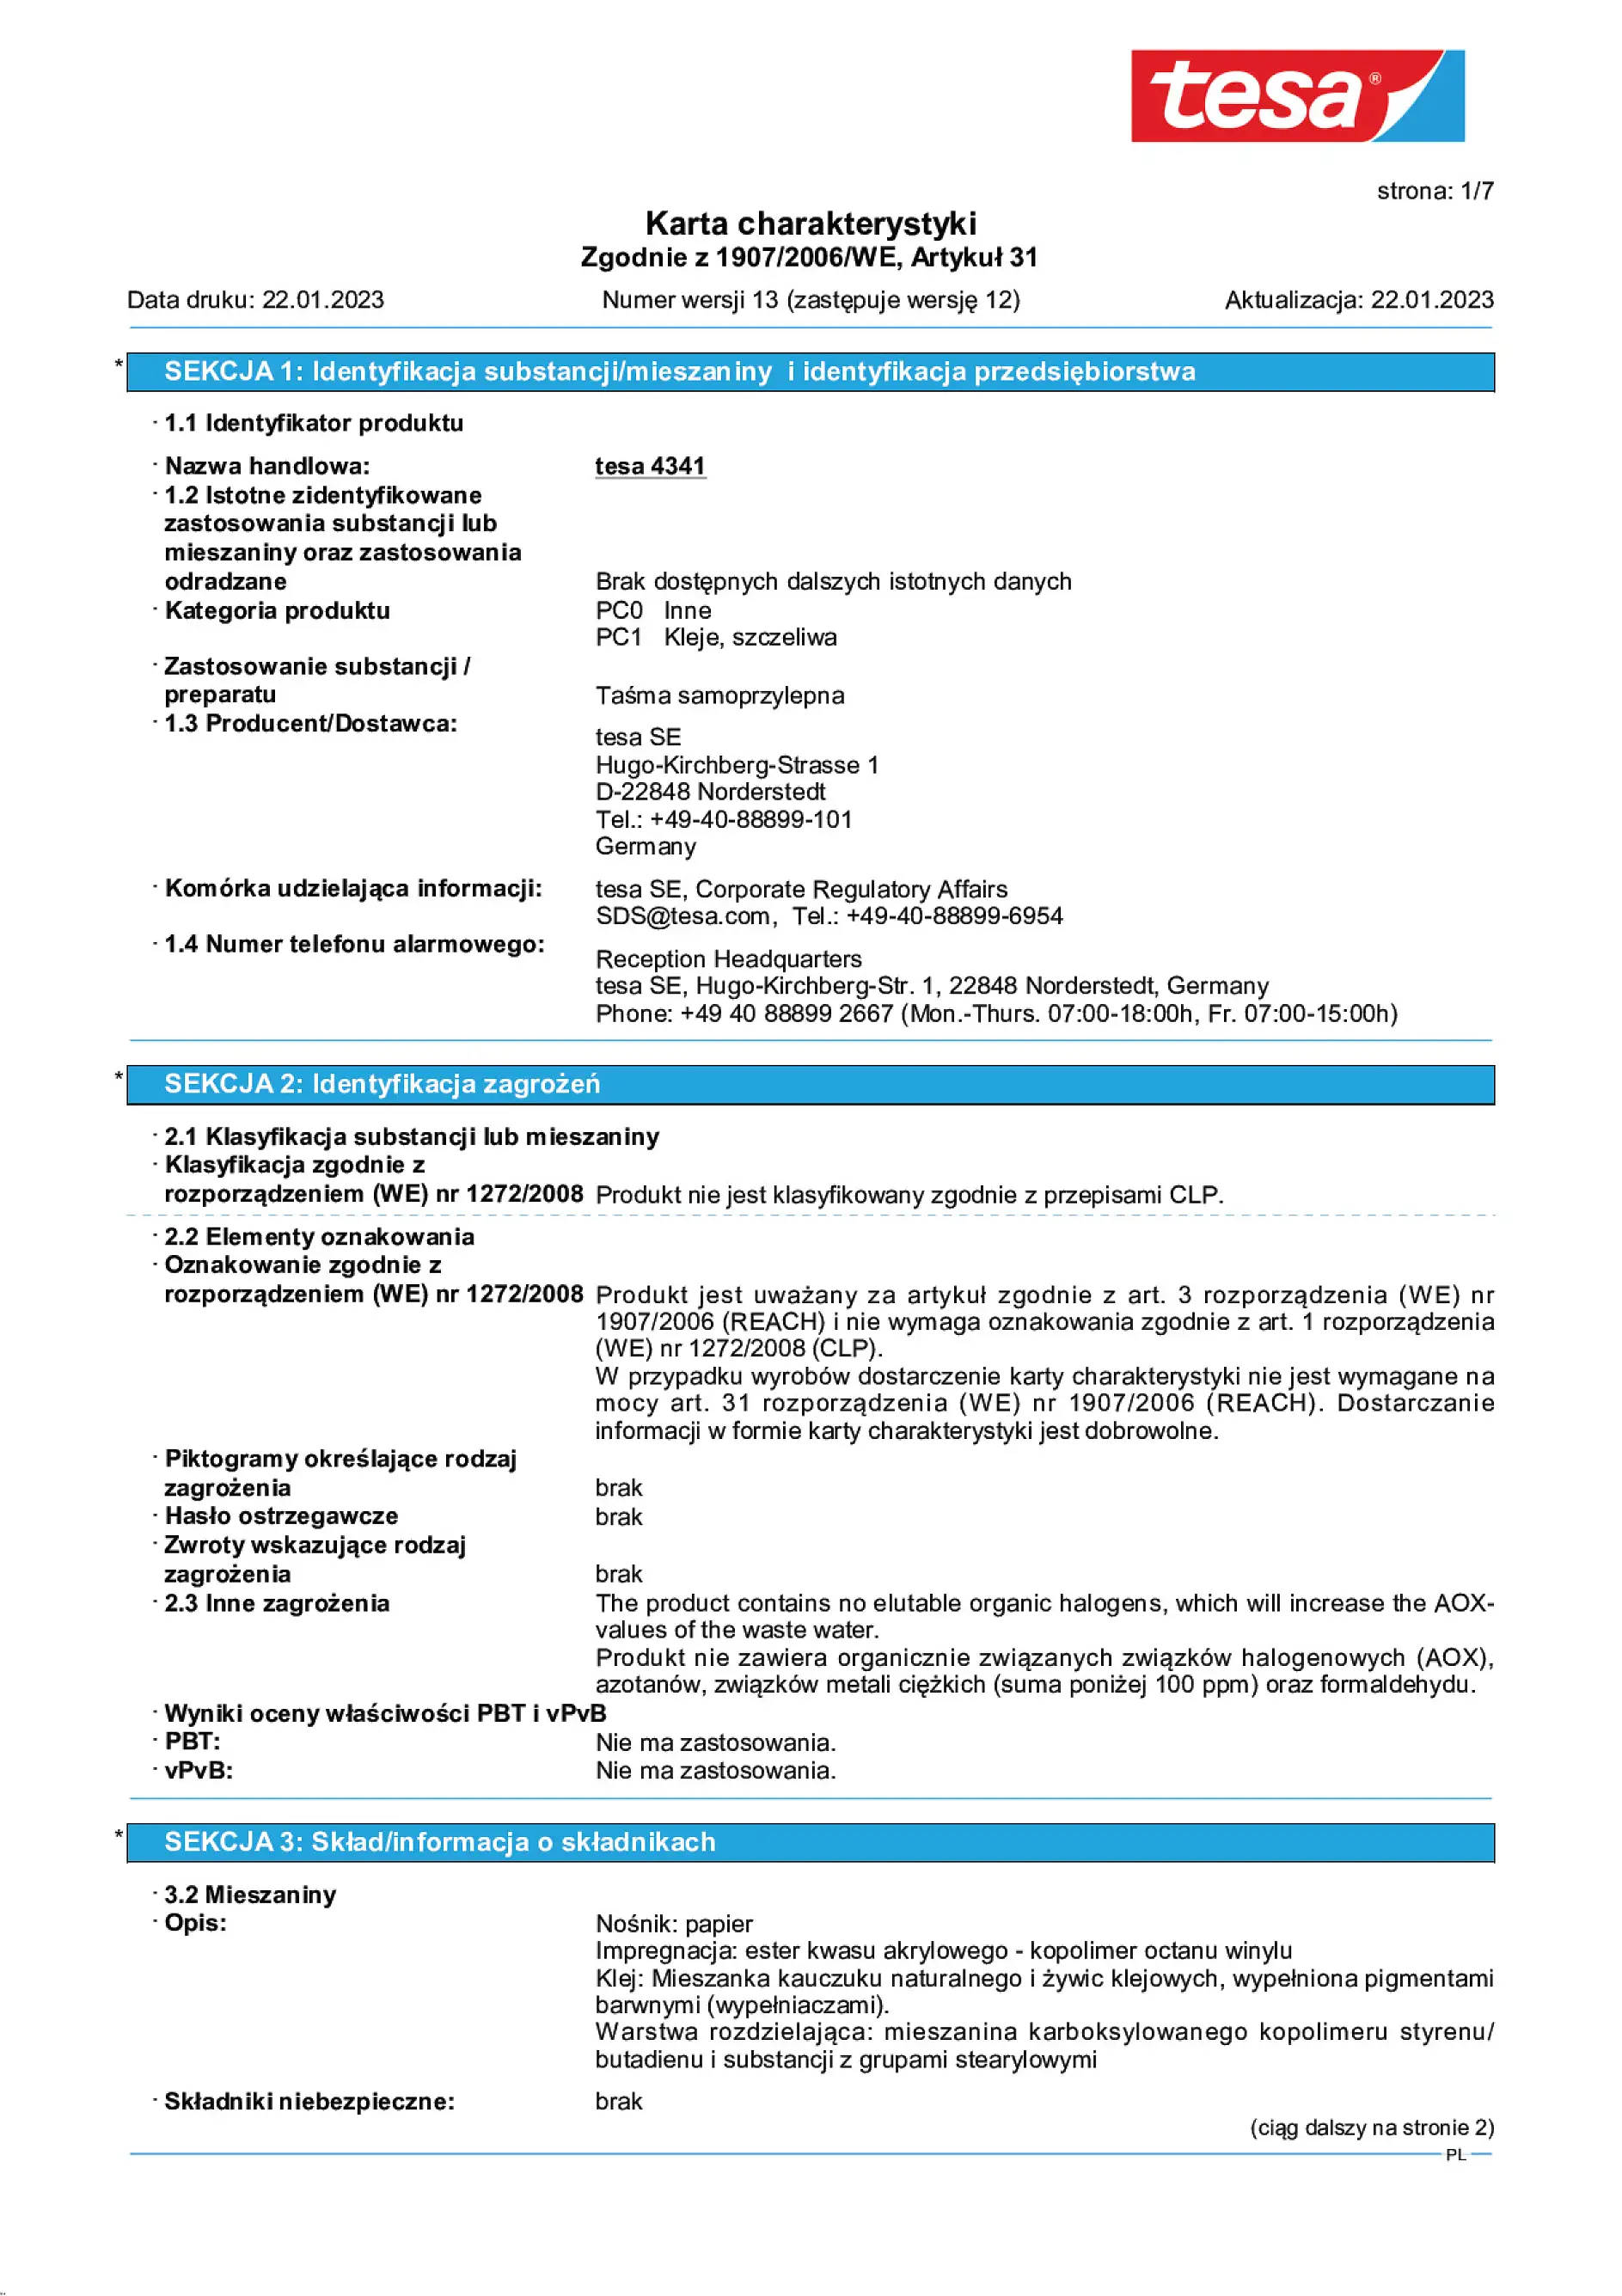 Safety data sheet_tesa® 4341_pl-PL_v13